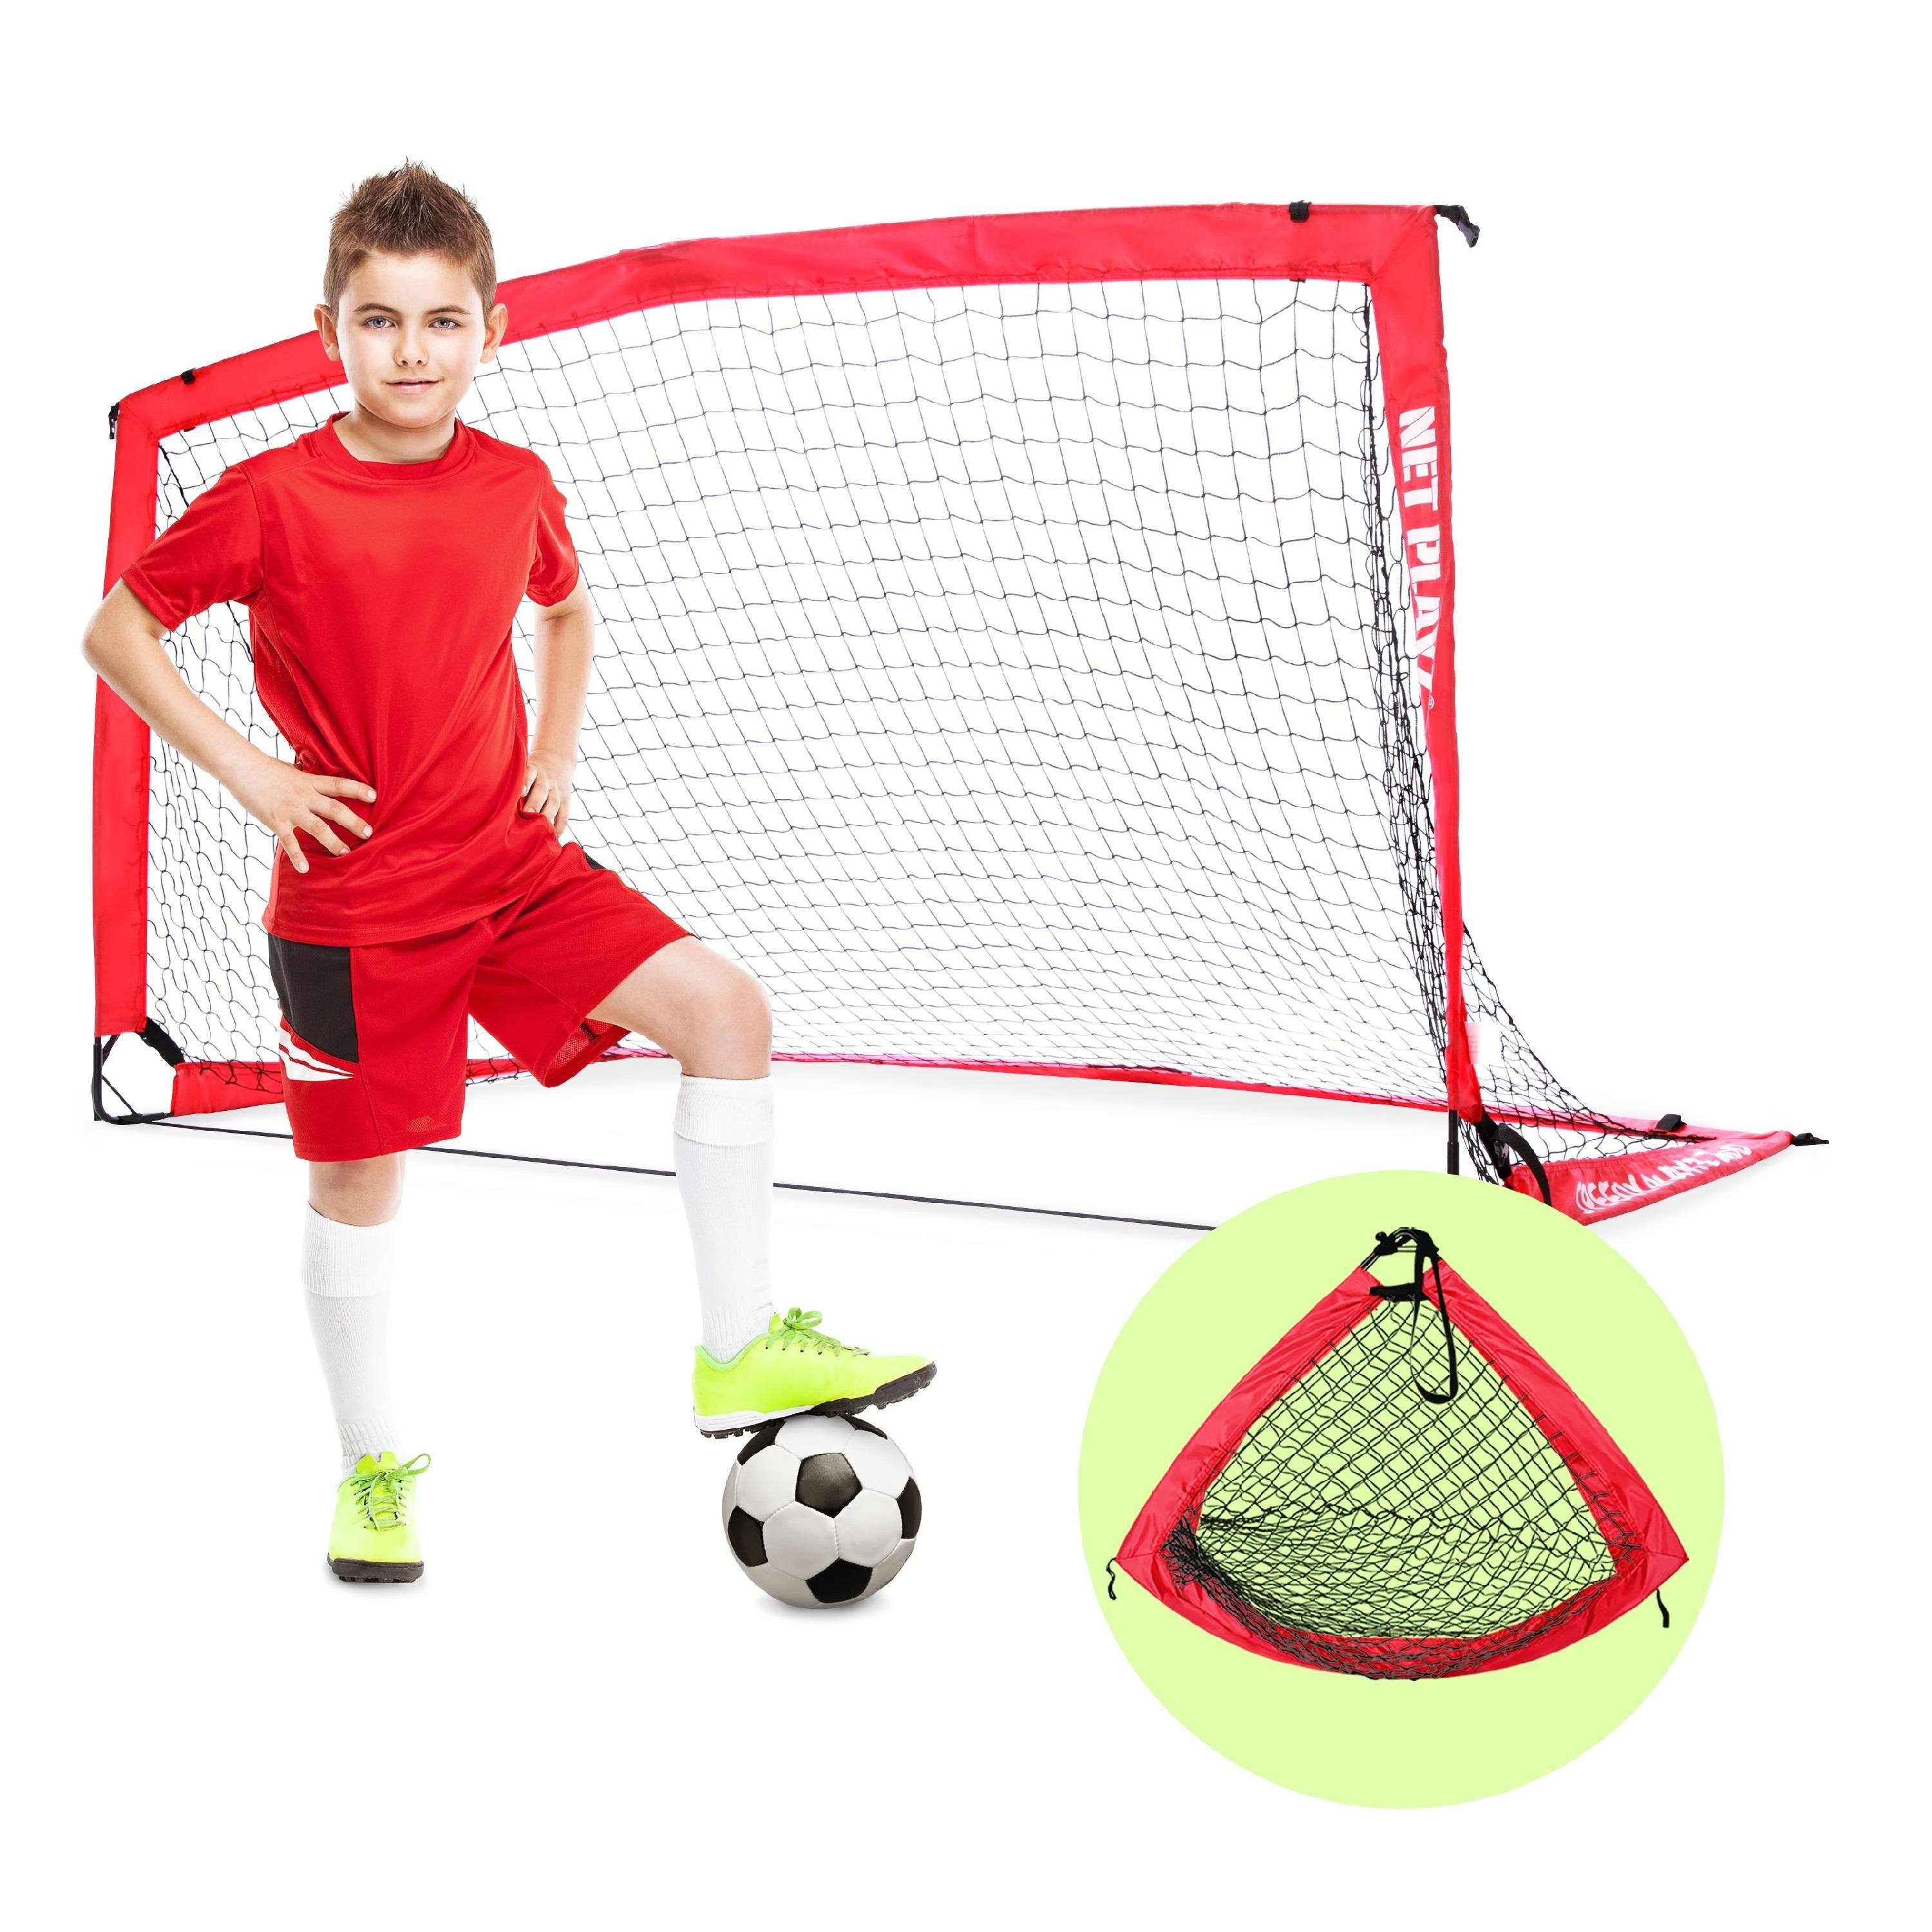 Kids Childs Football Training Soccer Pop Up Goal Post Net Outdoor Garden Toy 